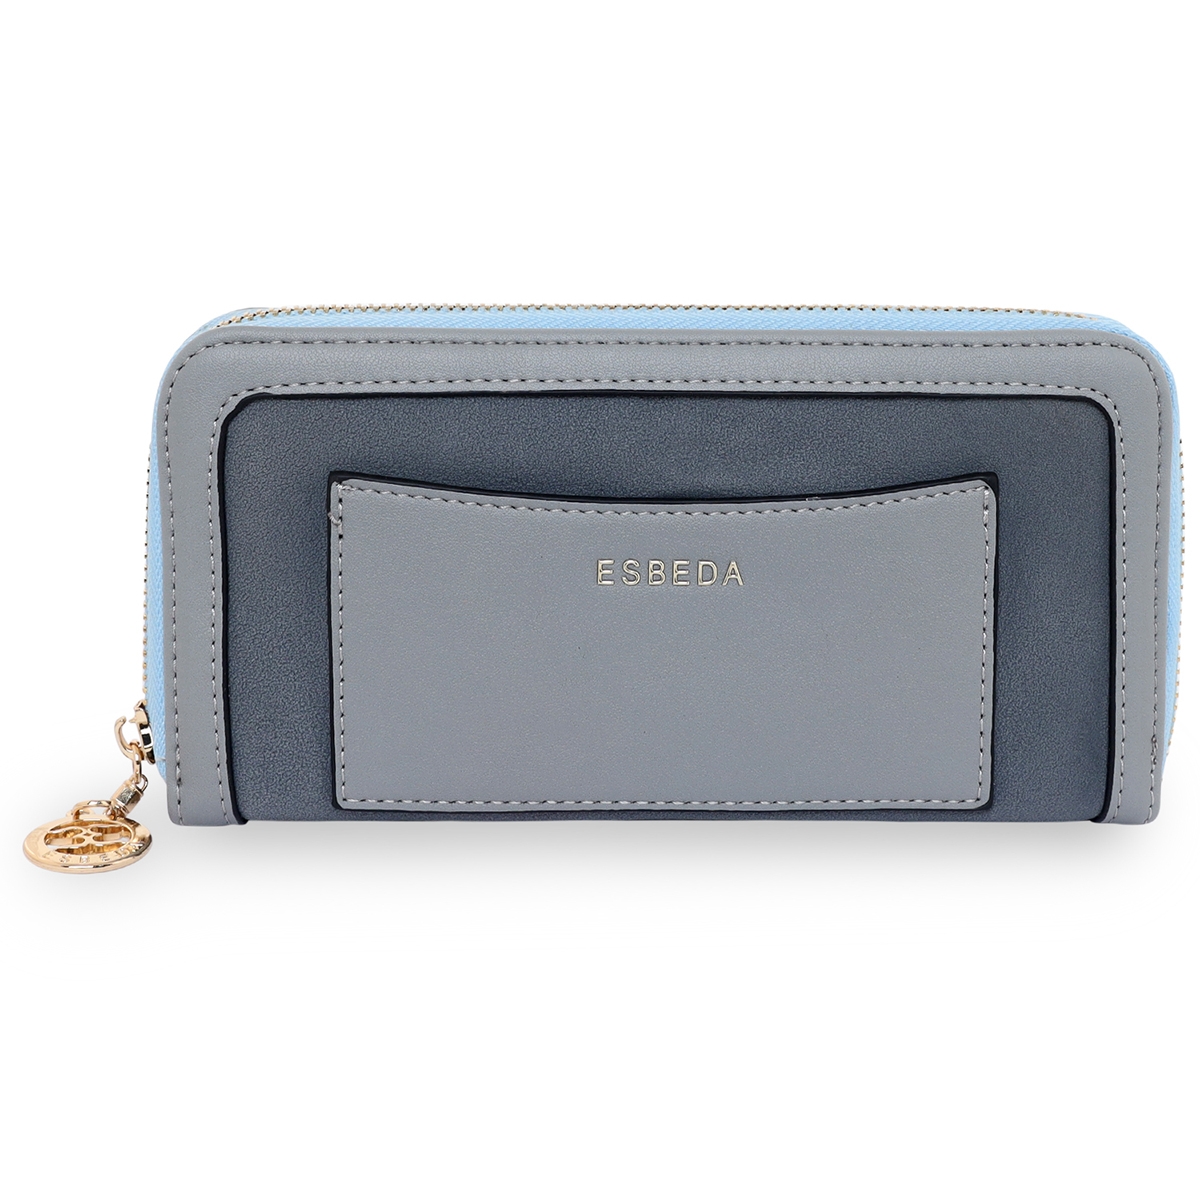 ESBEDA | ESBEDA Grey Color Soft Suede Wallet For Women's- Large